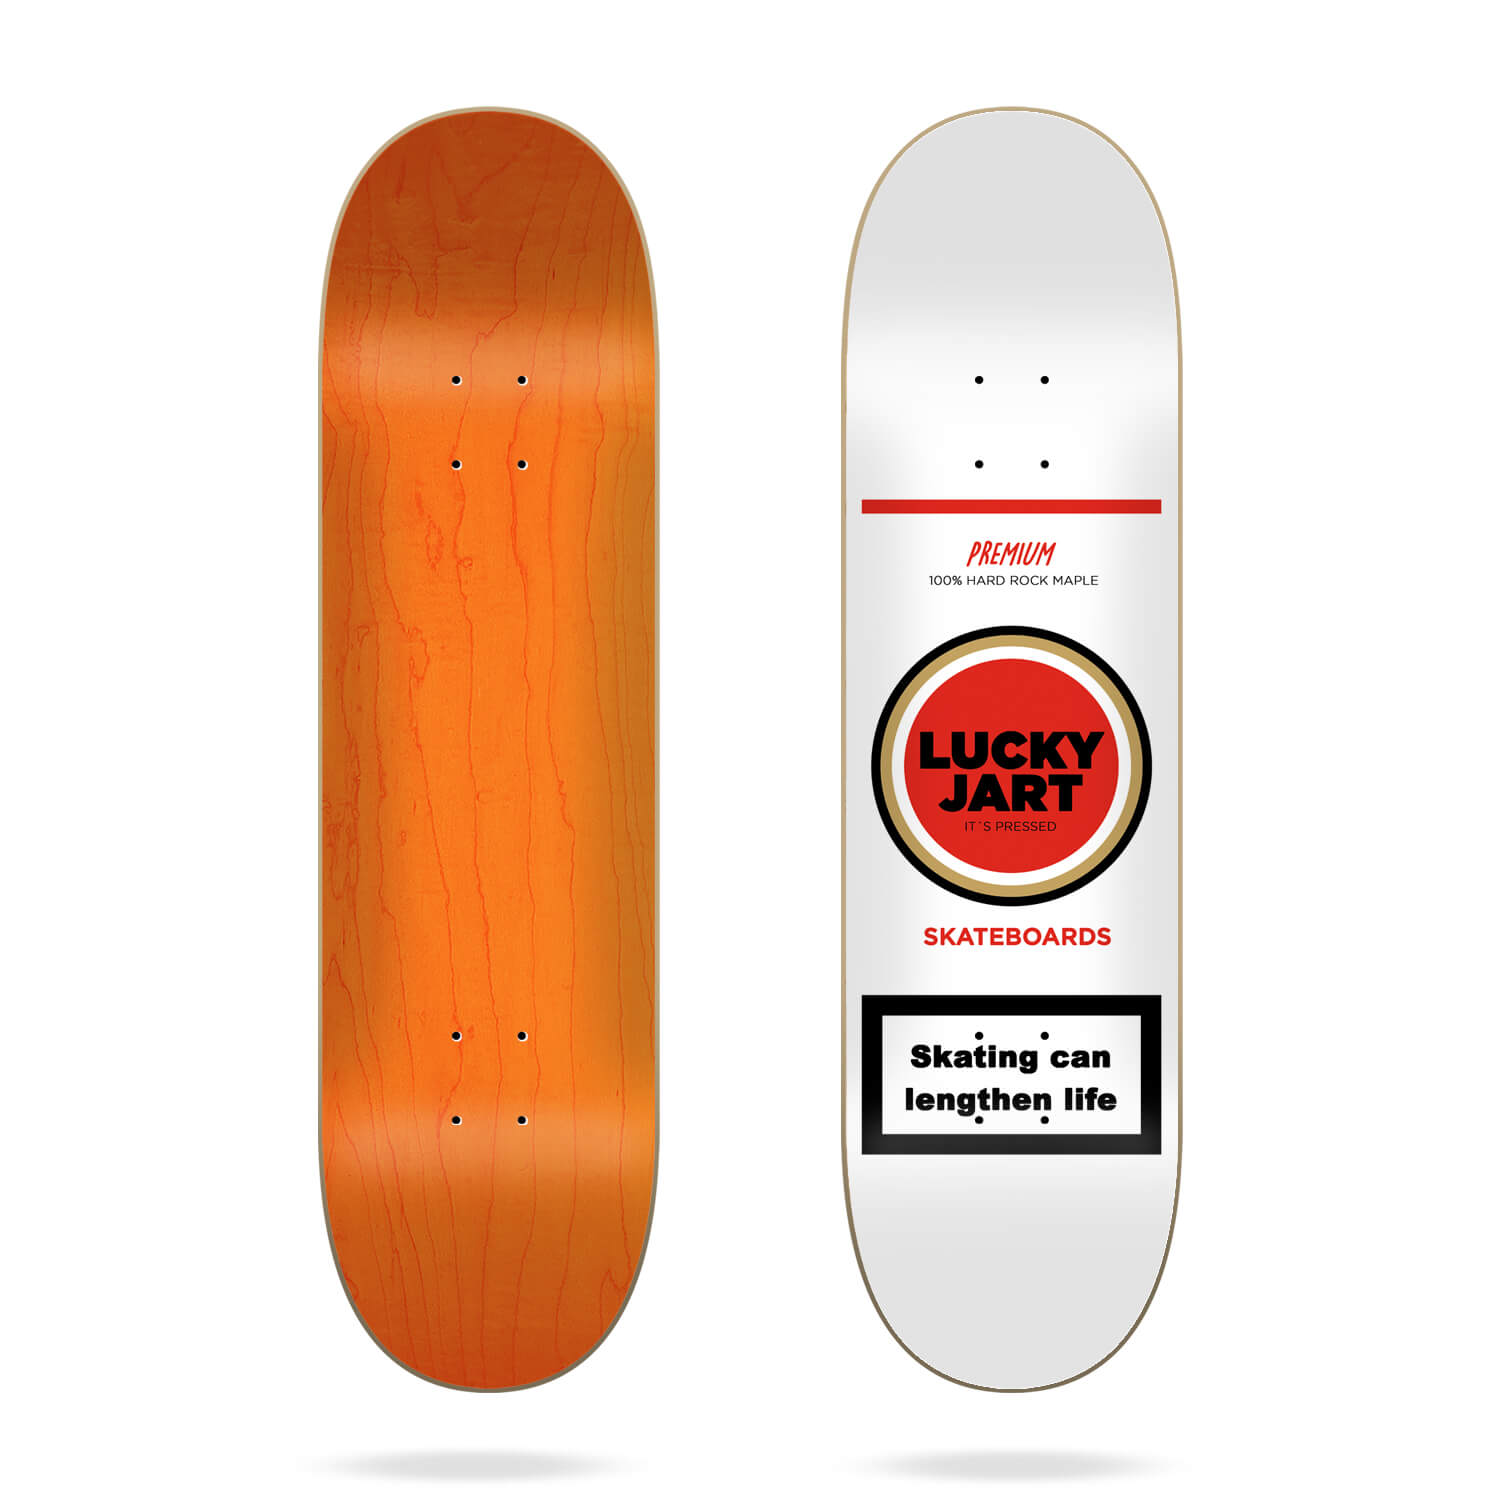 [Skateboard Complete] Jart Life 8.25 Deck